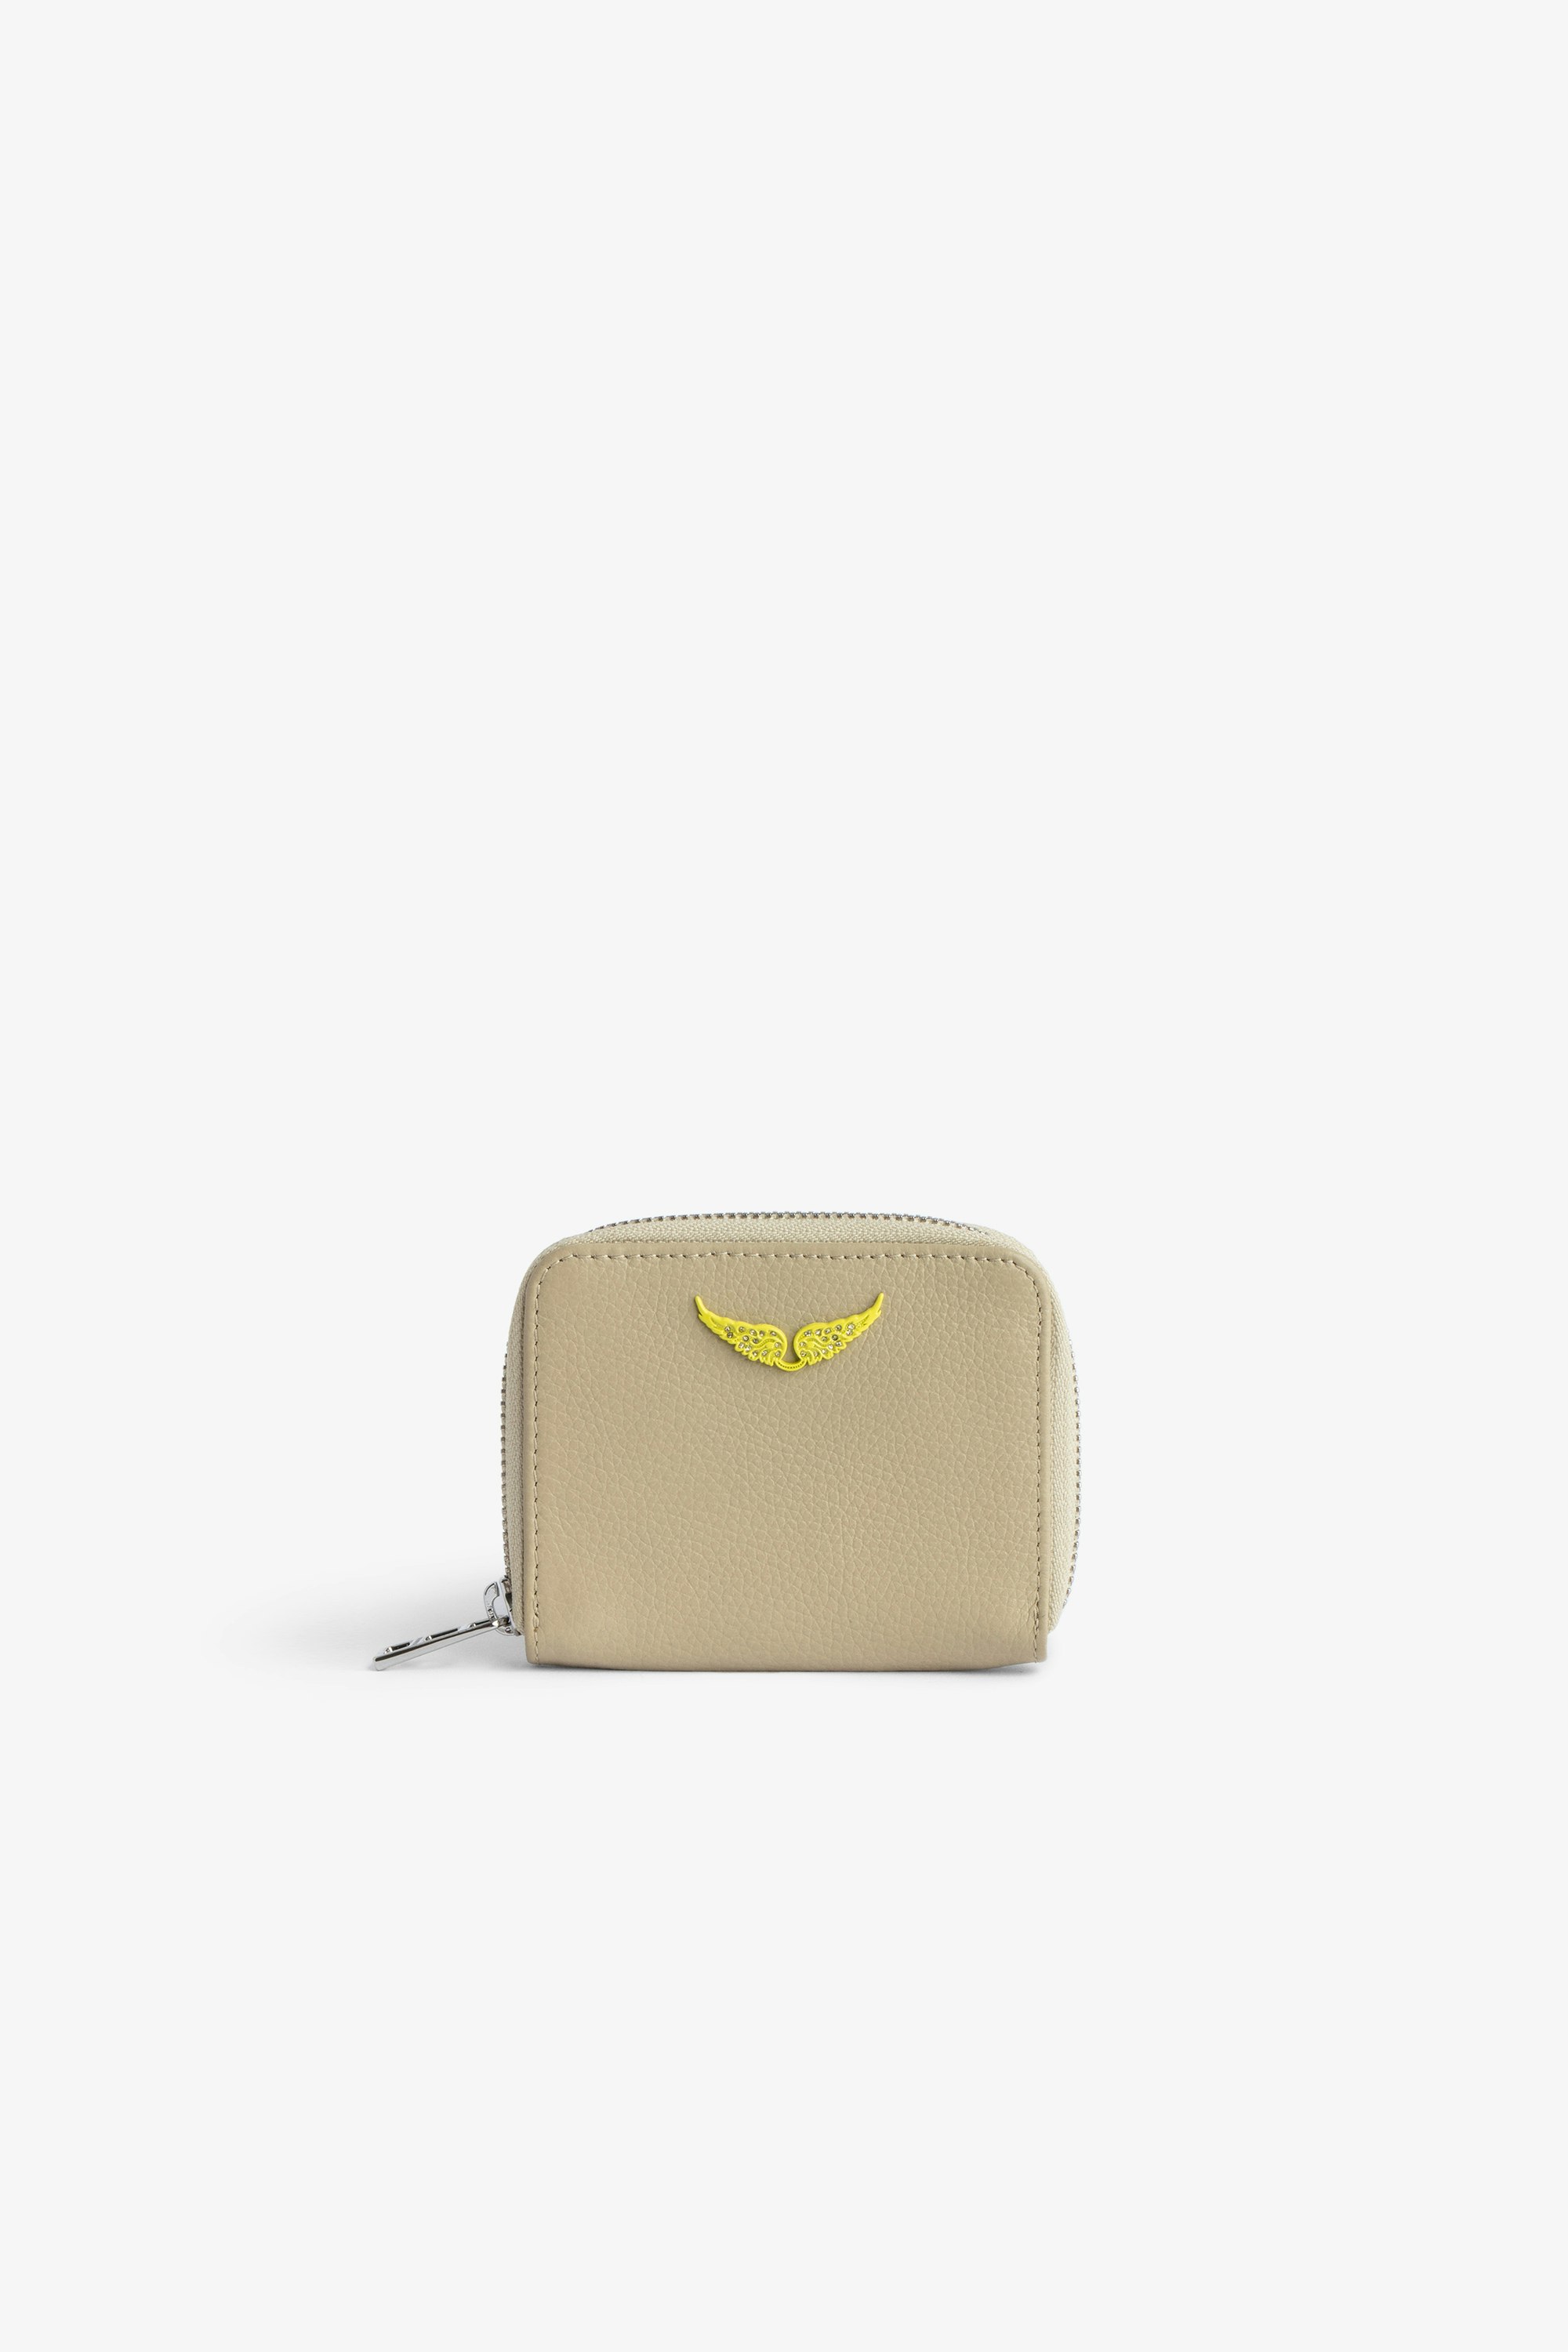 Portemonnaie Mini ZV Damen-Portemonnaie aus beigefarbenem Glattleder mit gelben, strassbesetzten Flügeln